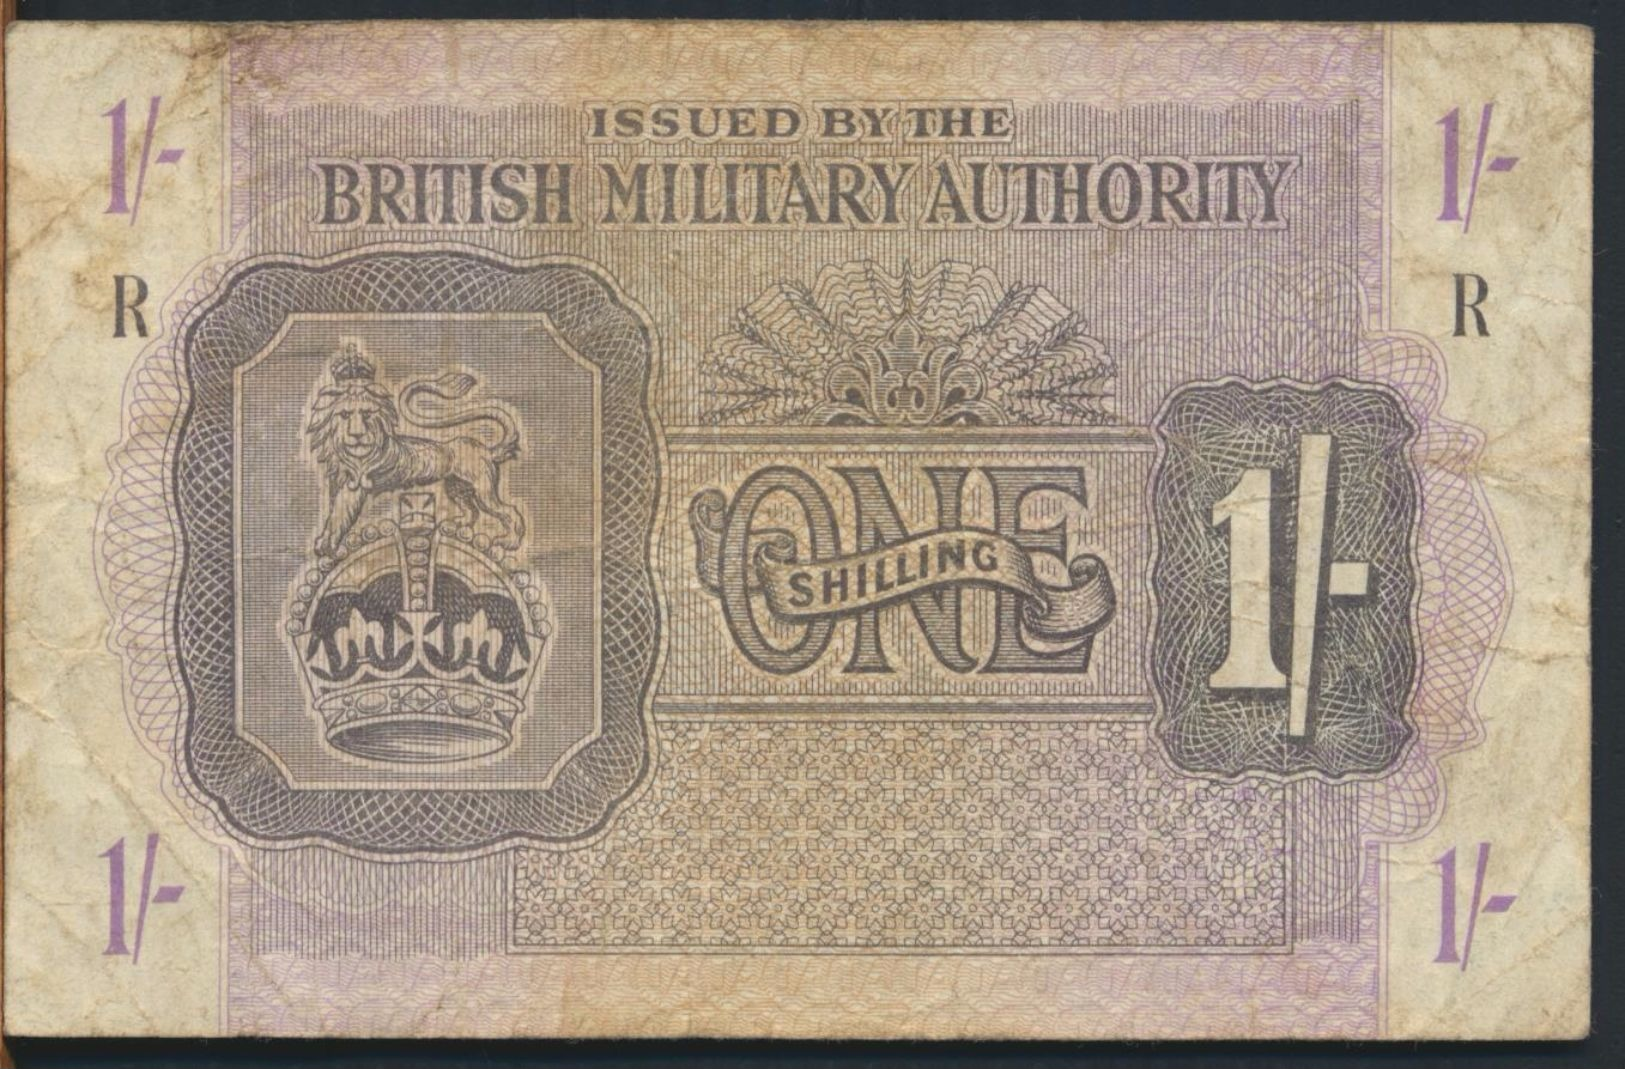 °°° UK - BRITISH MILITARY AUTHORITY 1 POUND R °°° - British Military Authority